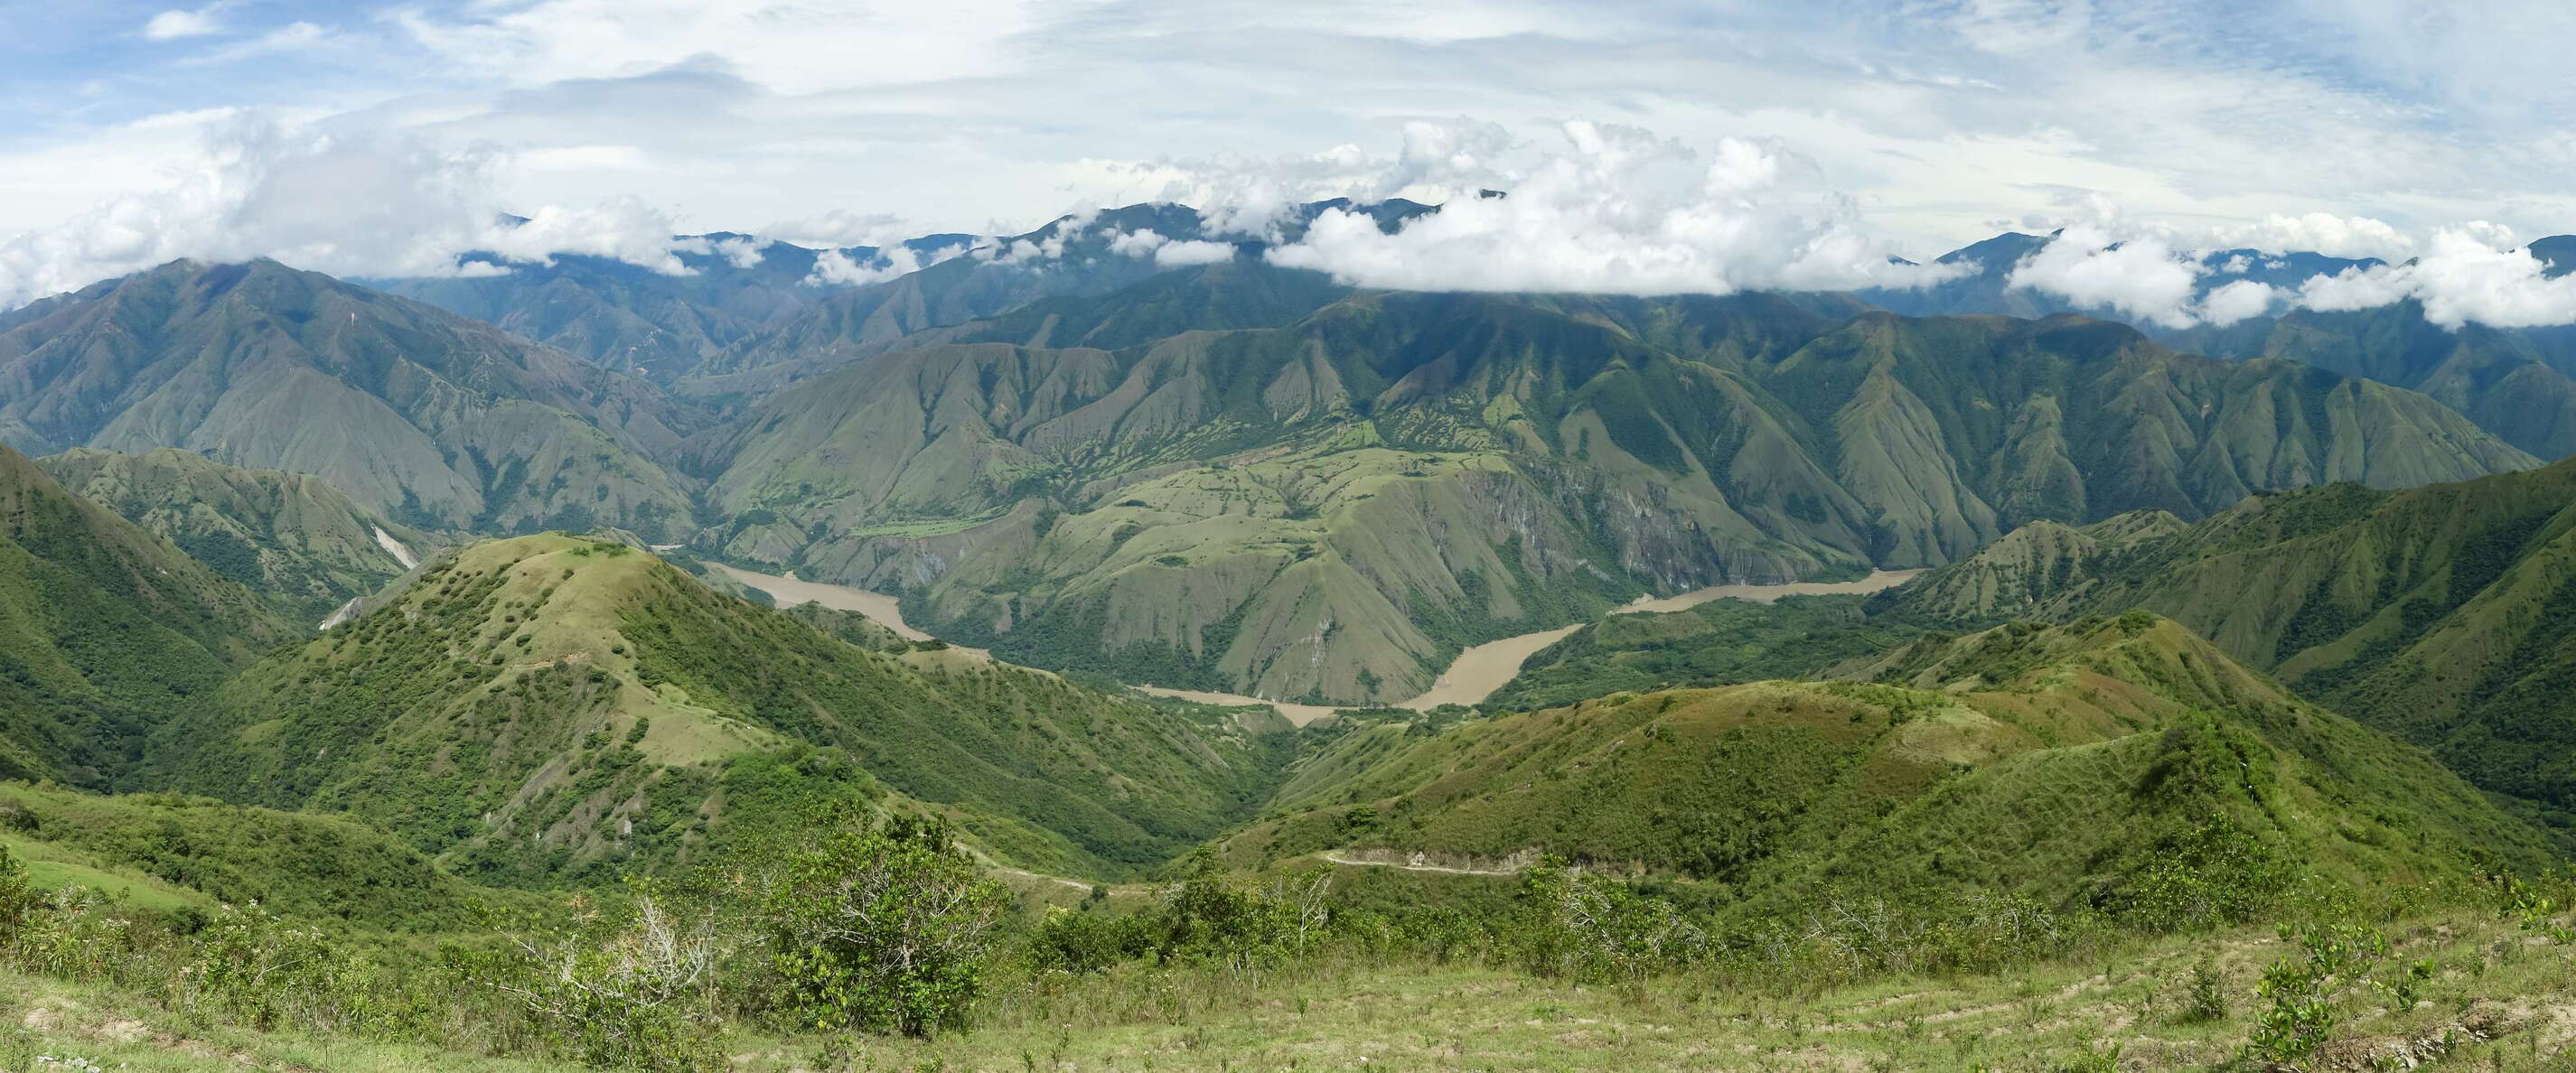 Cauca Valley with El Guasimo Landslide